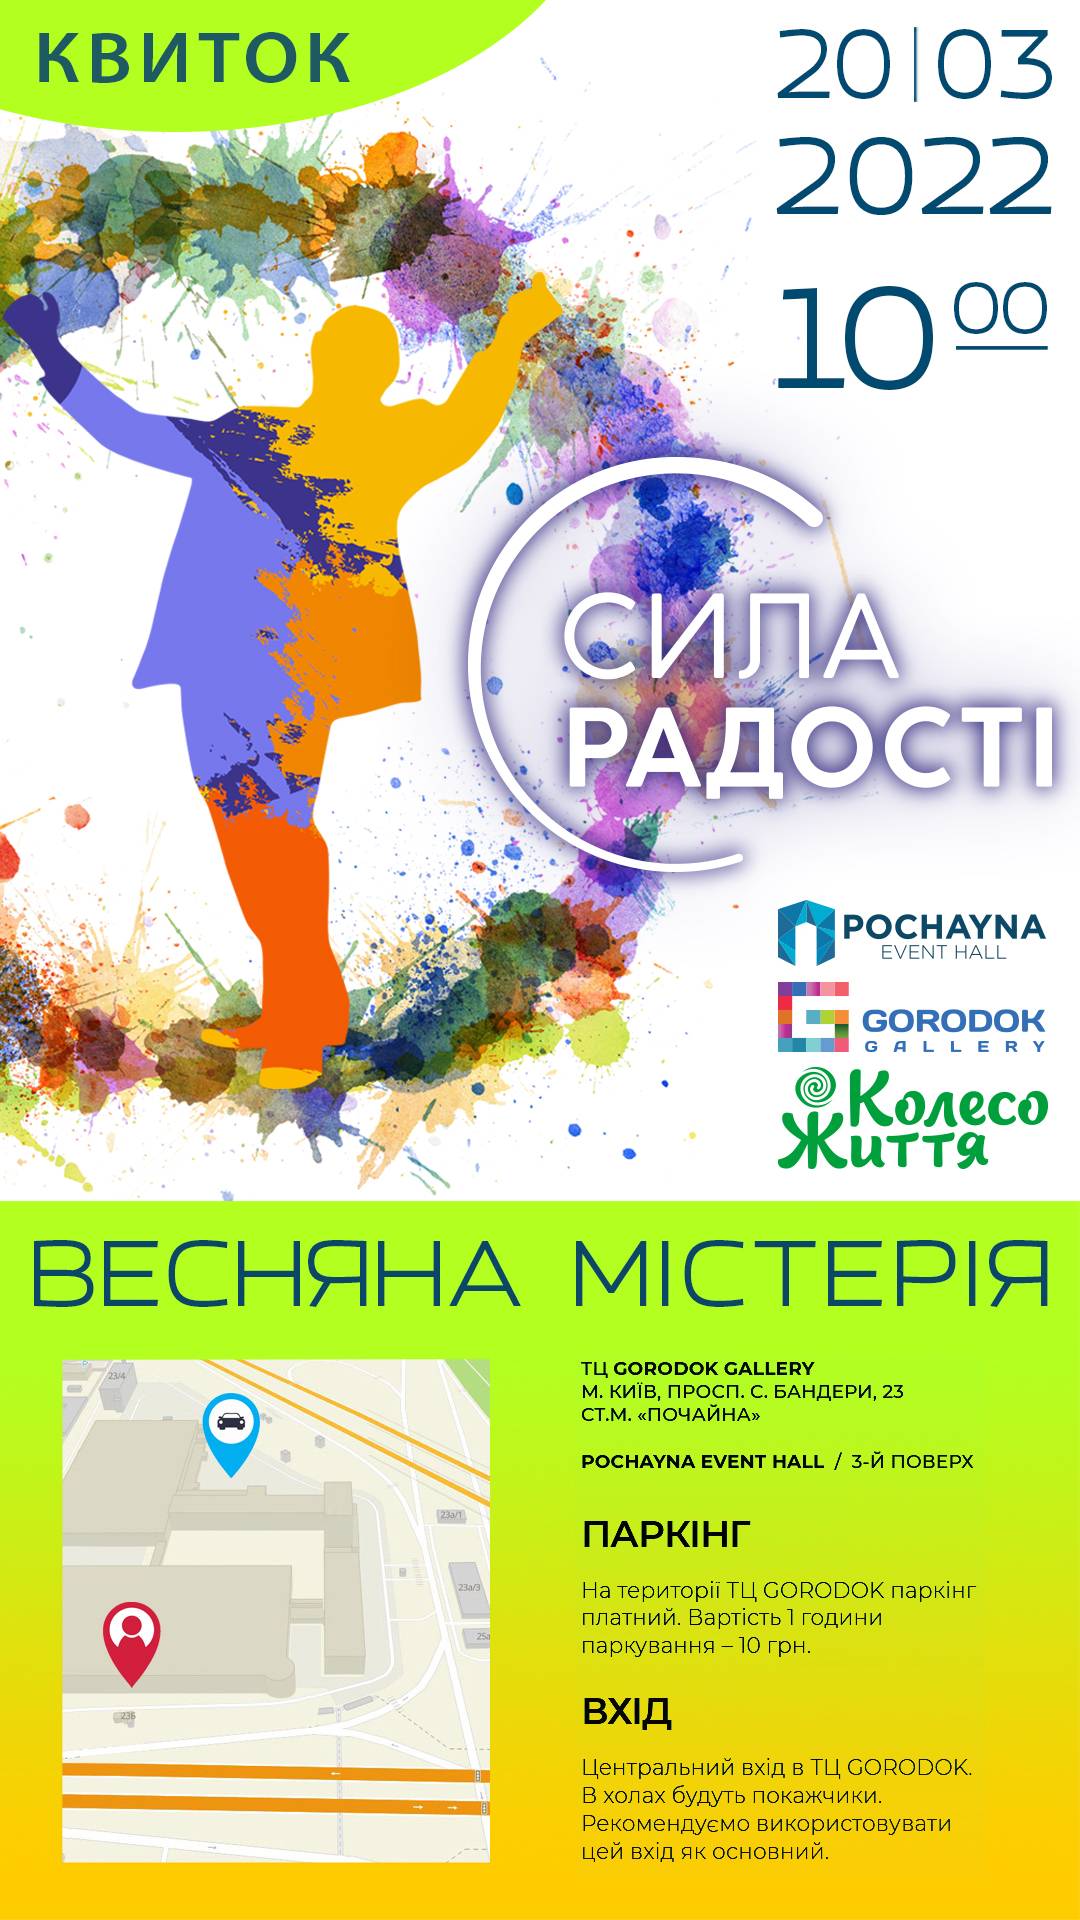 Колесо Життя запрошує всіх на свято Містерія «Сила Радості» 20 березня 2022 року в Pochayna Event Hall.